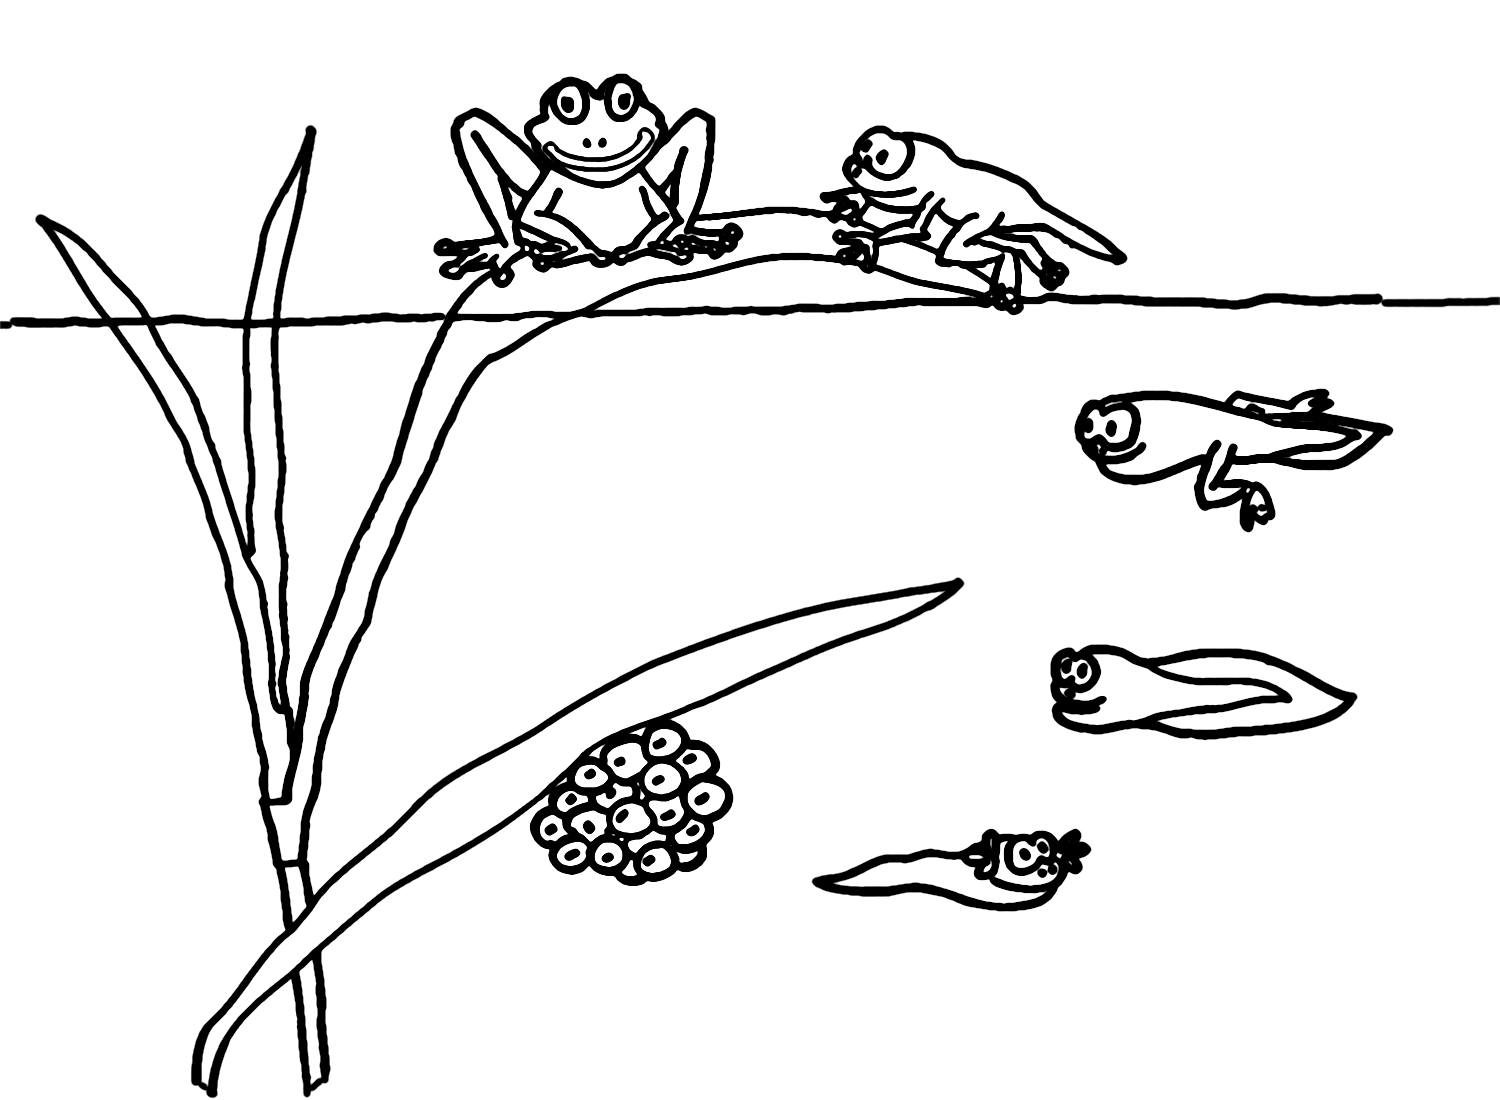 Ciclo de vida del renacuajo de rana de Tadpole